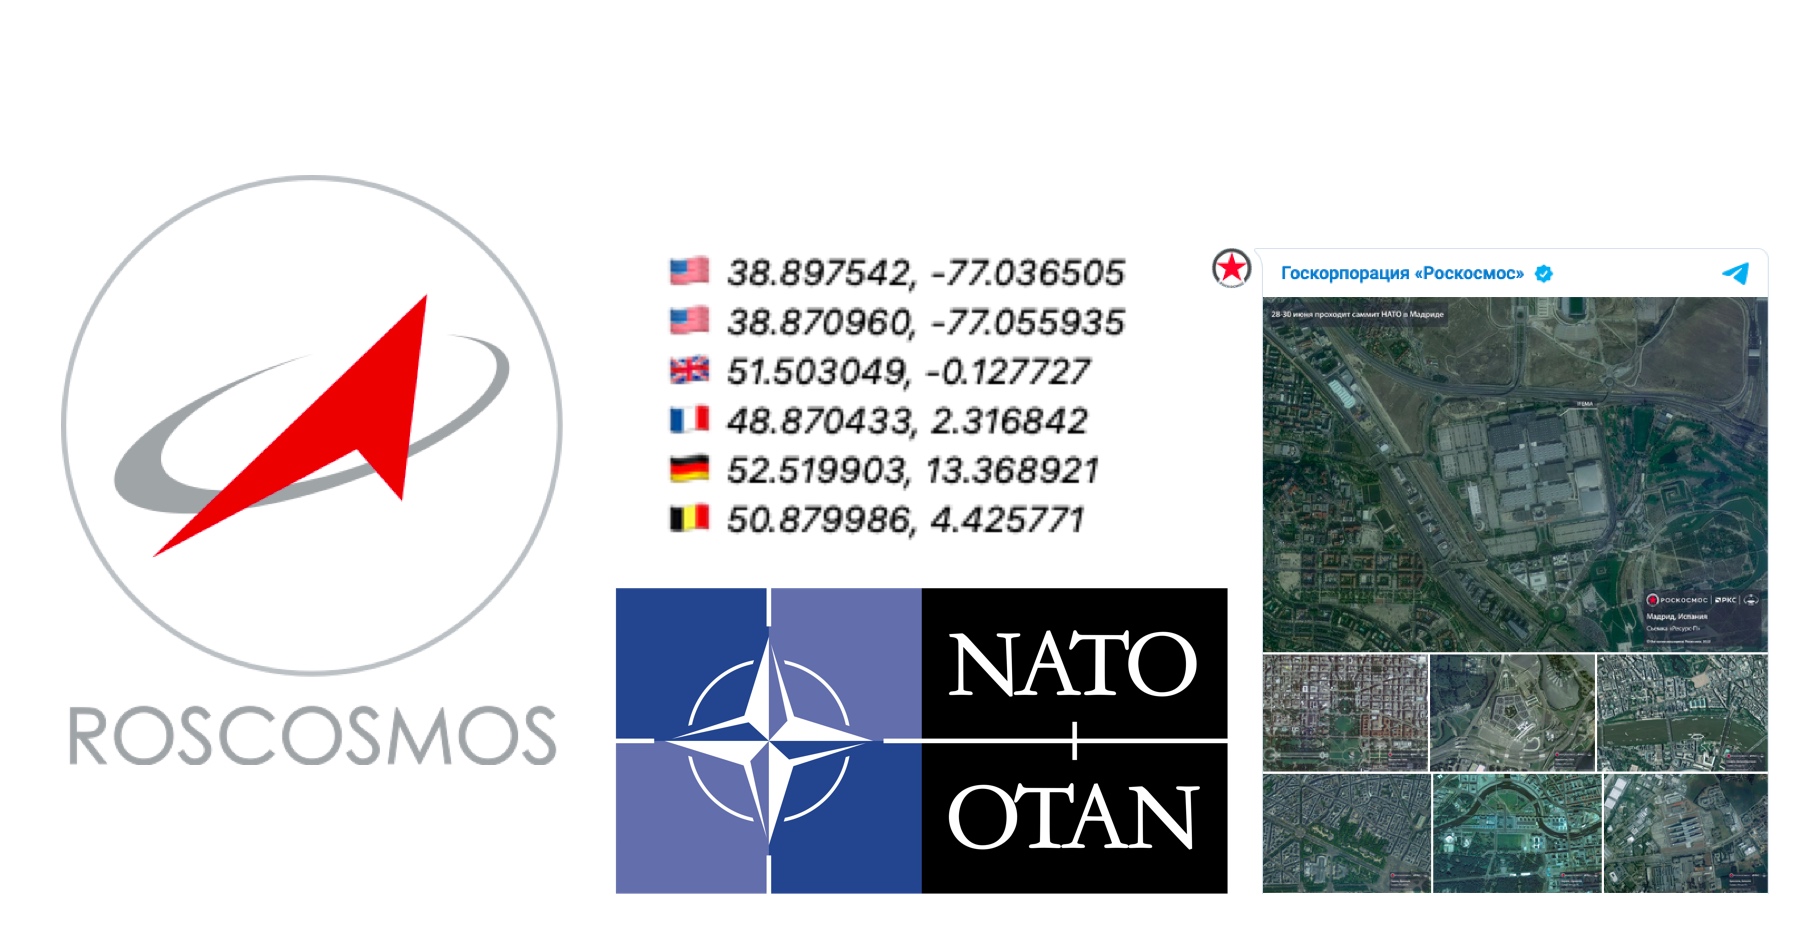 Ruská vesmírna agentúra zosmiešňuje NATO. Roskosmos pred summitom Severoatlantickej aliancie v Madride zverejnil satelitné snímky a súradnice rozhodovacích centier Západu